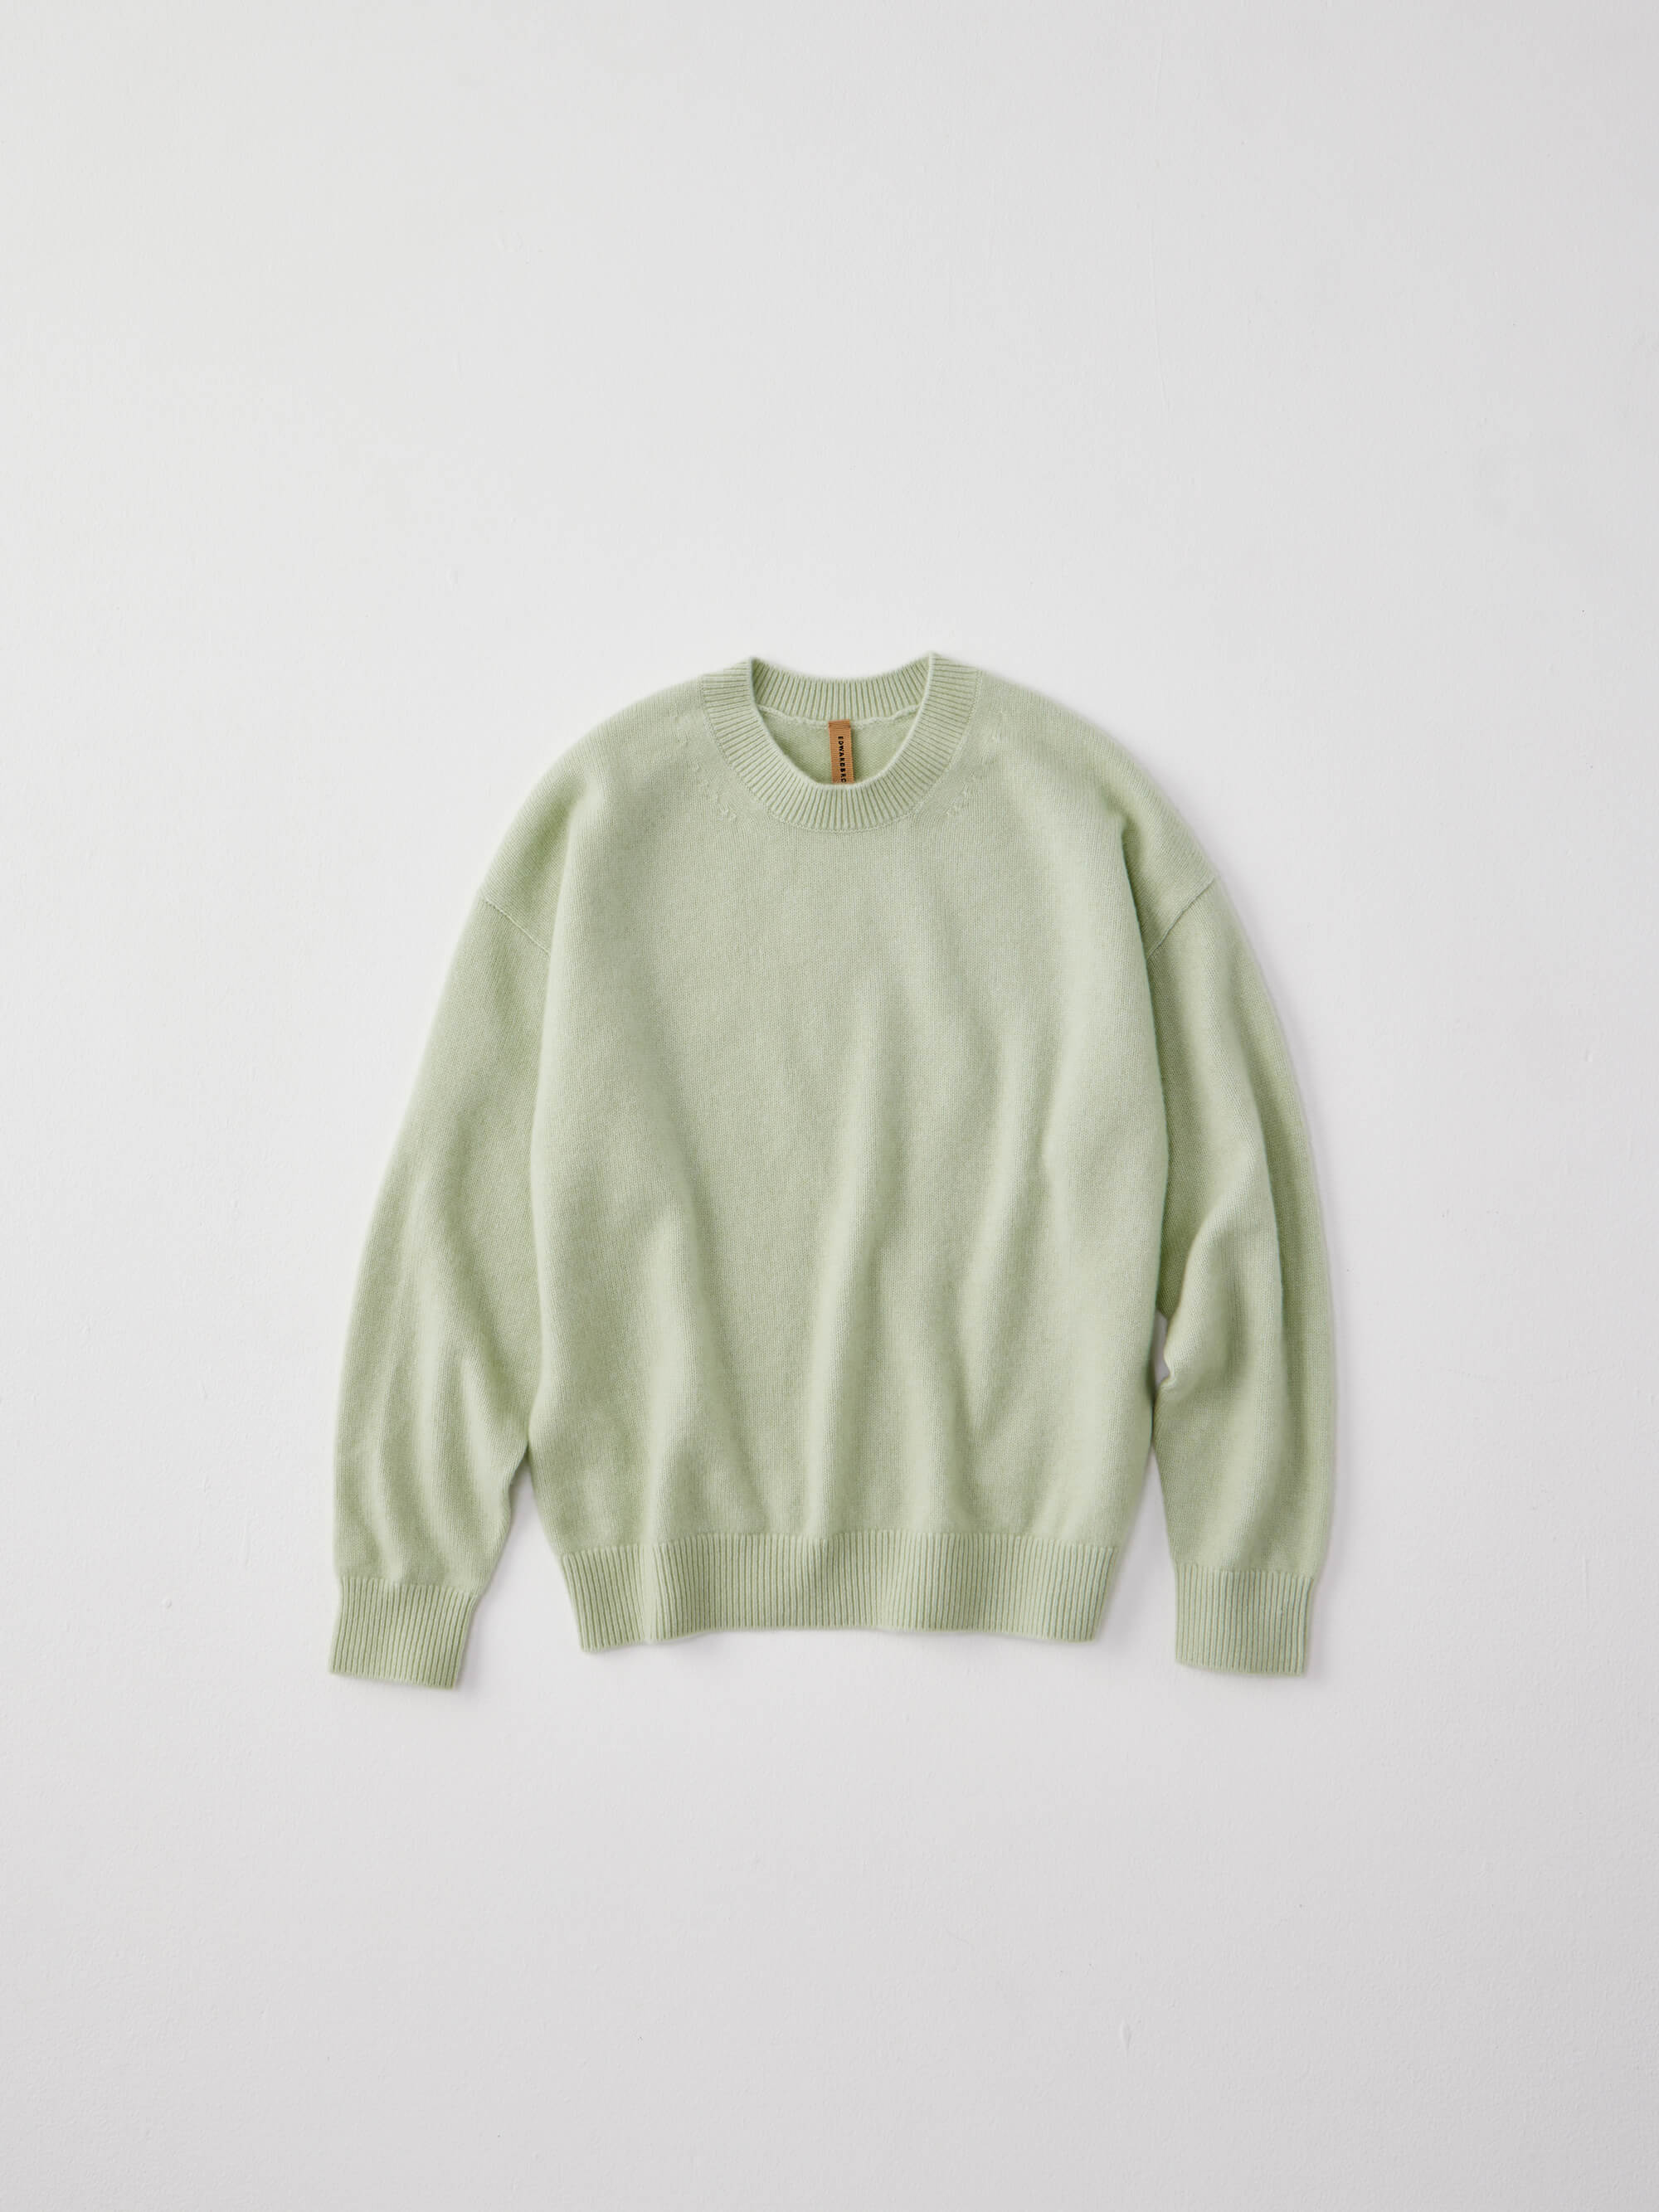 カシミヤスニット アイスグリーン Cashmere knit Ice Green | エドワードブラウン  EDWARD BROWN